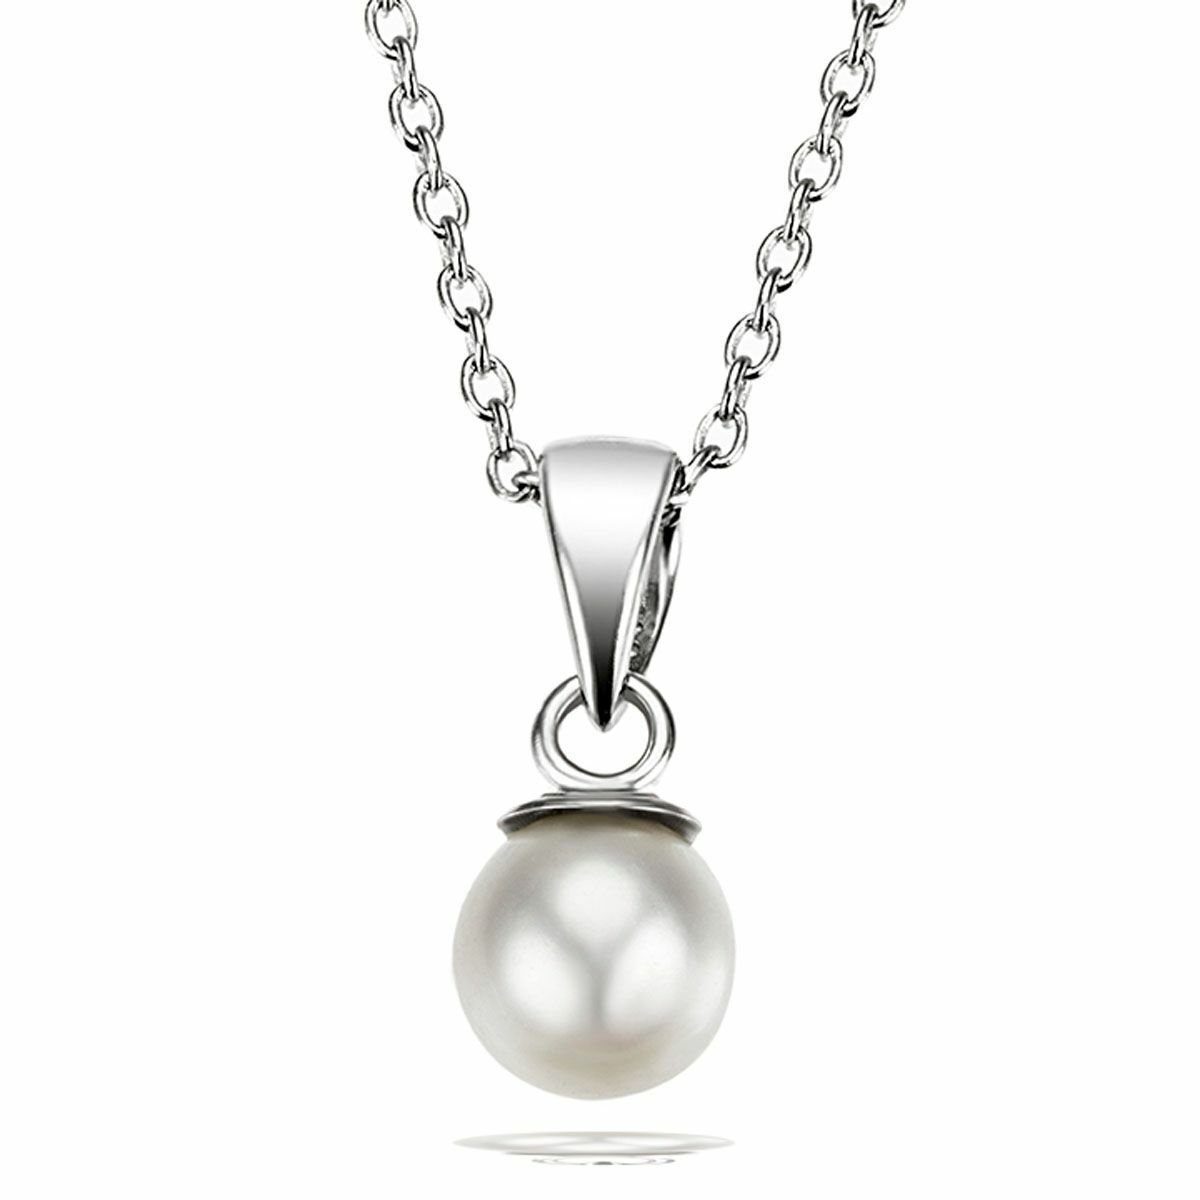 Neue japanische Produkte zu Schnäppchenpreisen goldmaid Perlenkette